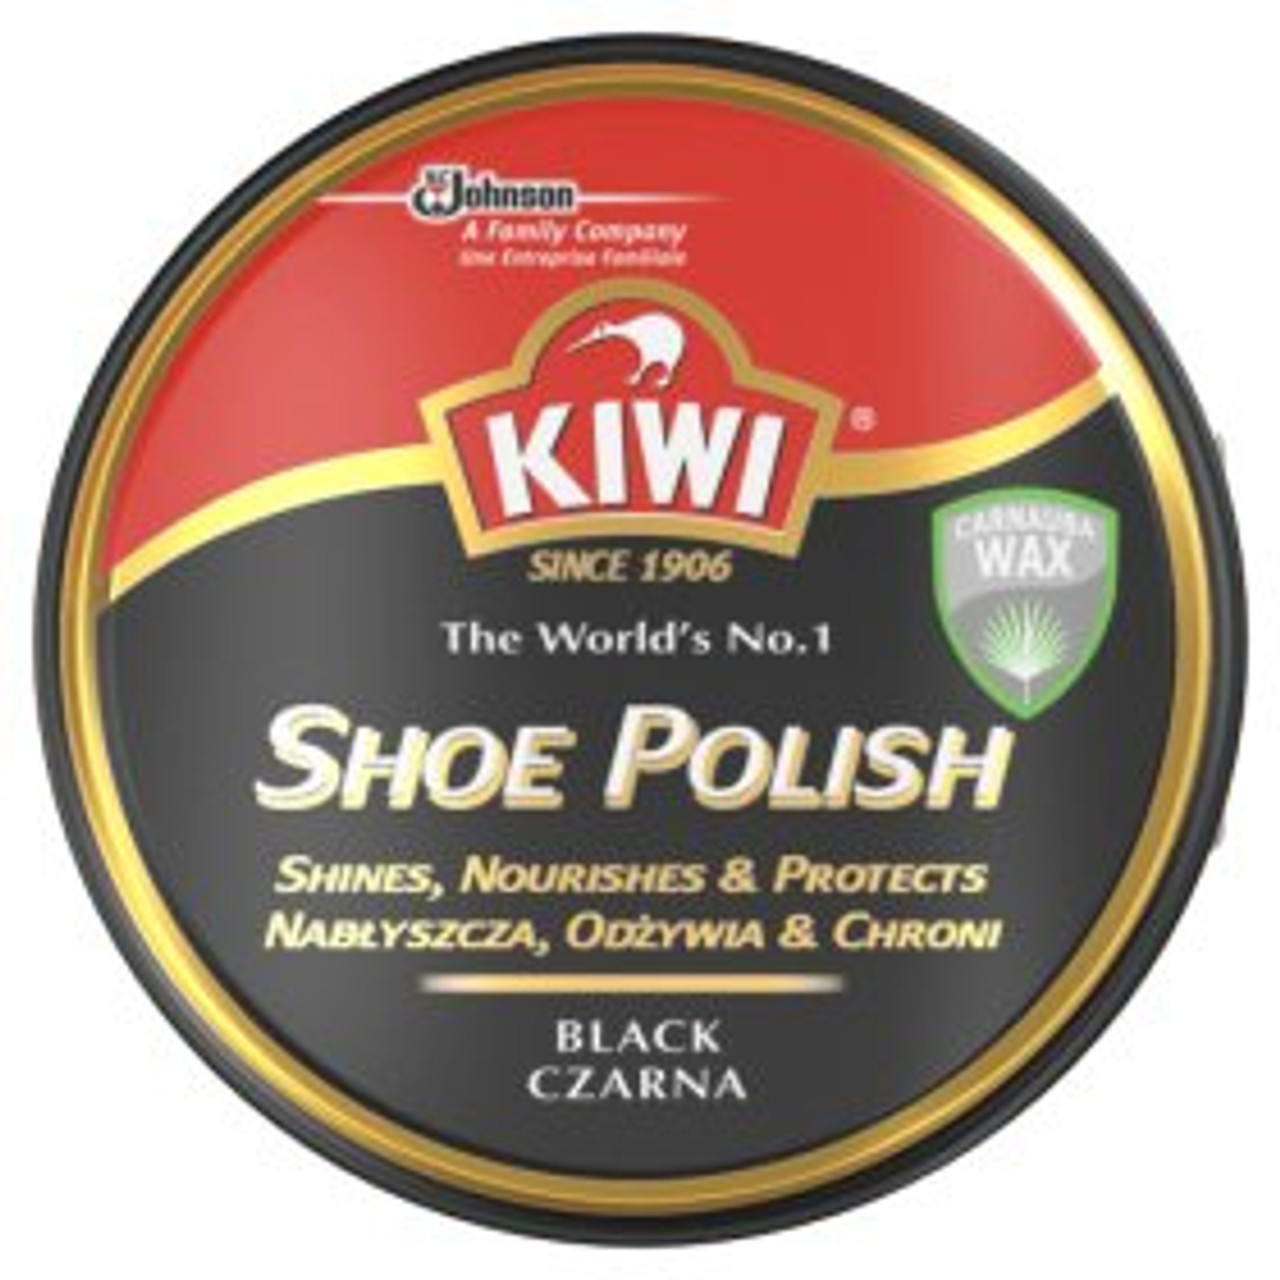 kiwi shoe products